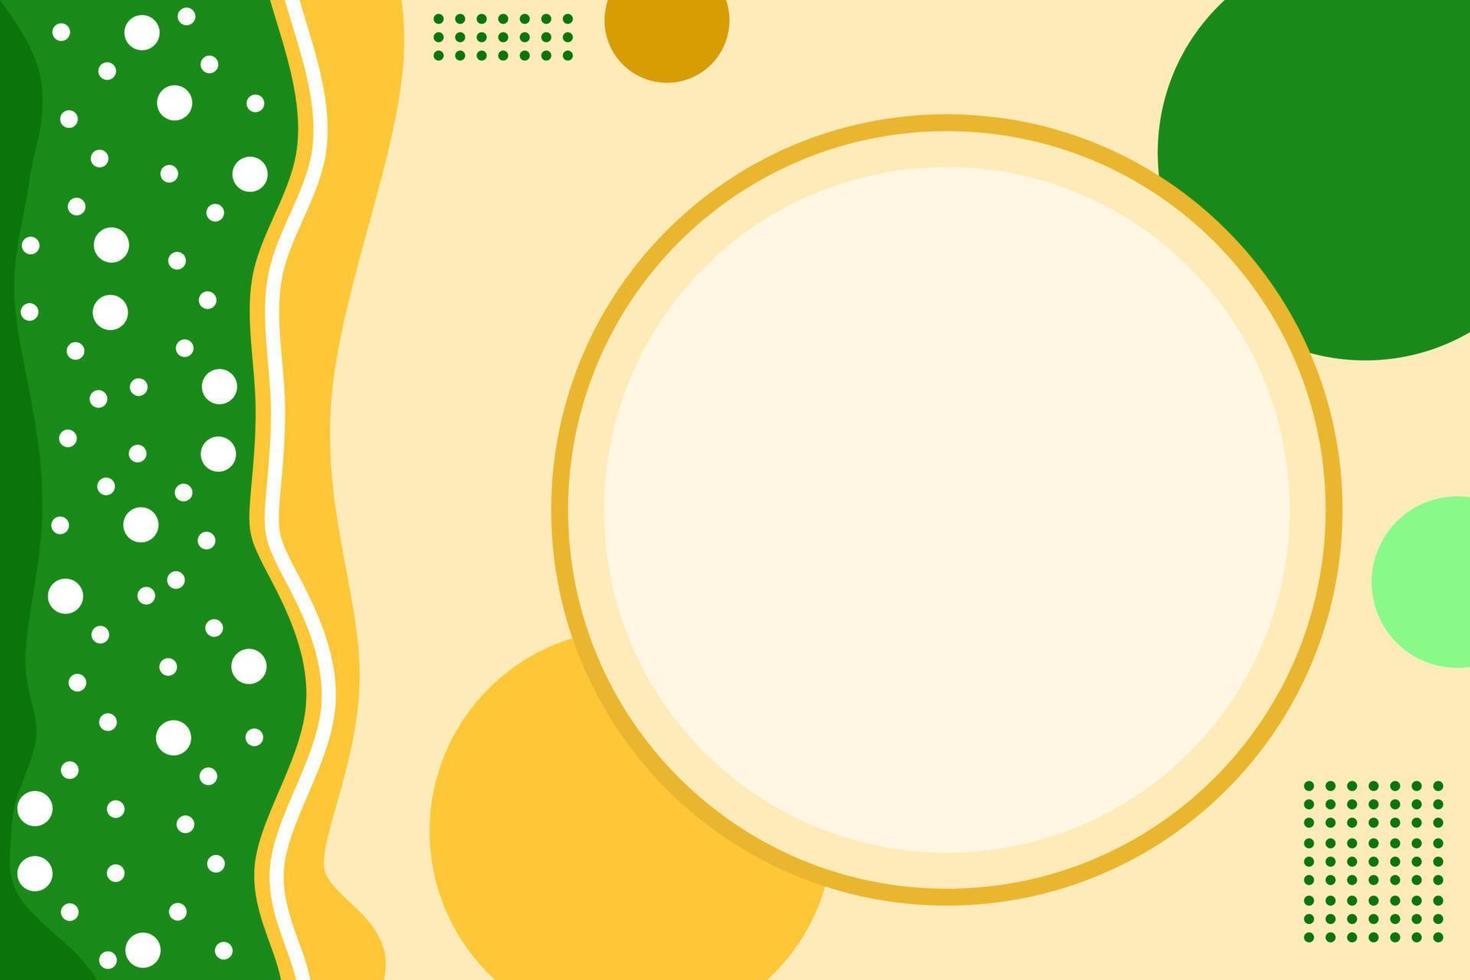 abstracto de fondo en color amarillo y verde con diseño plano. vector